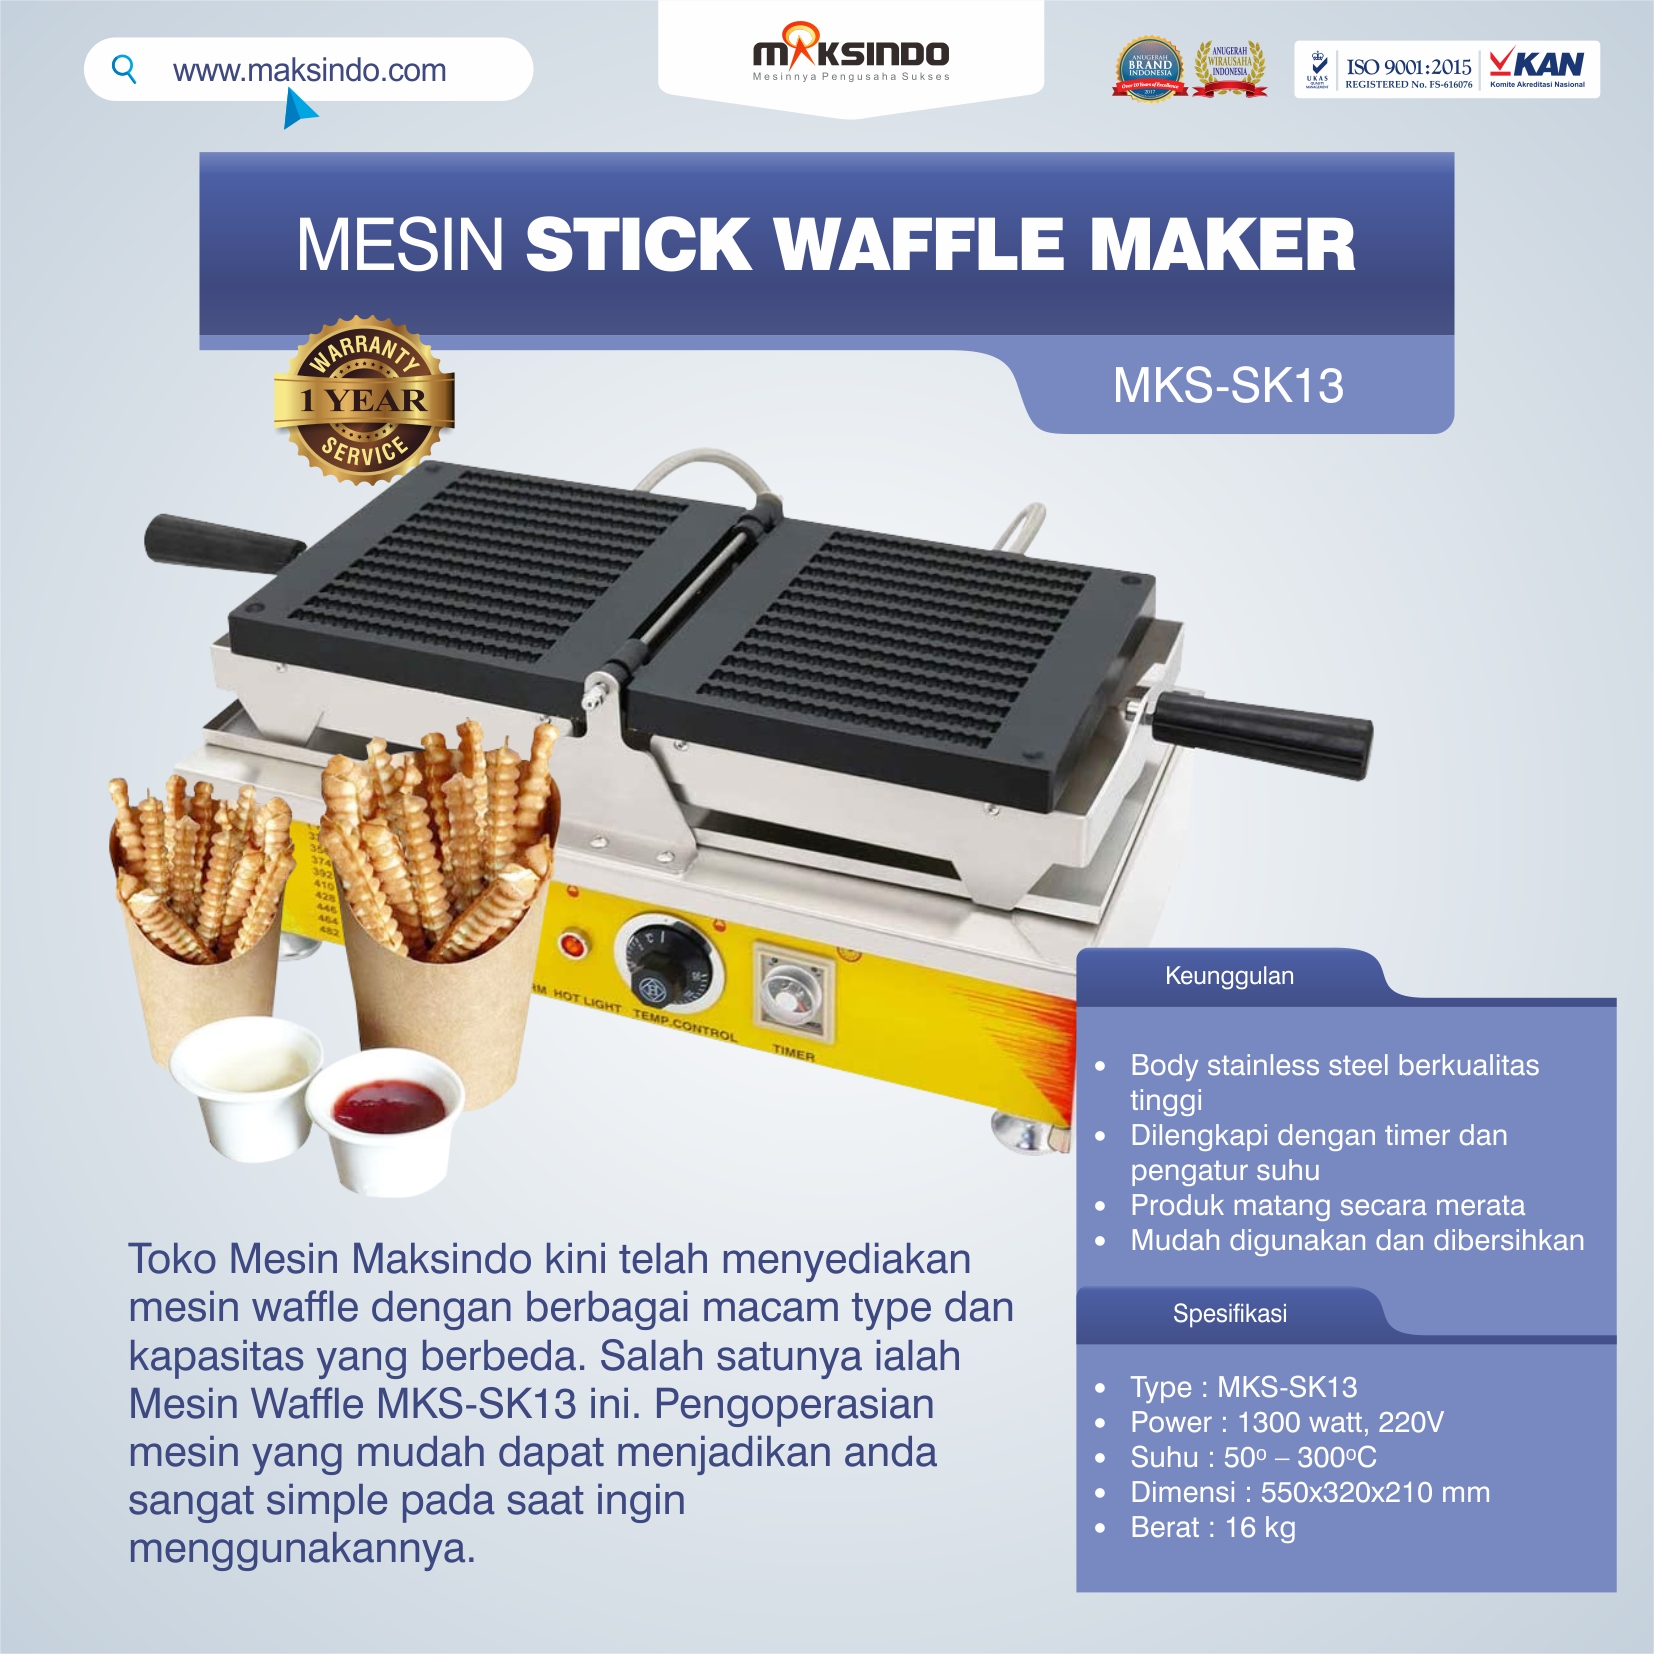 Jual Mesin Stick Waffle Maker MKS-SK13 di Tangerang